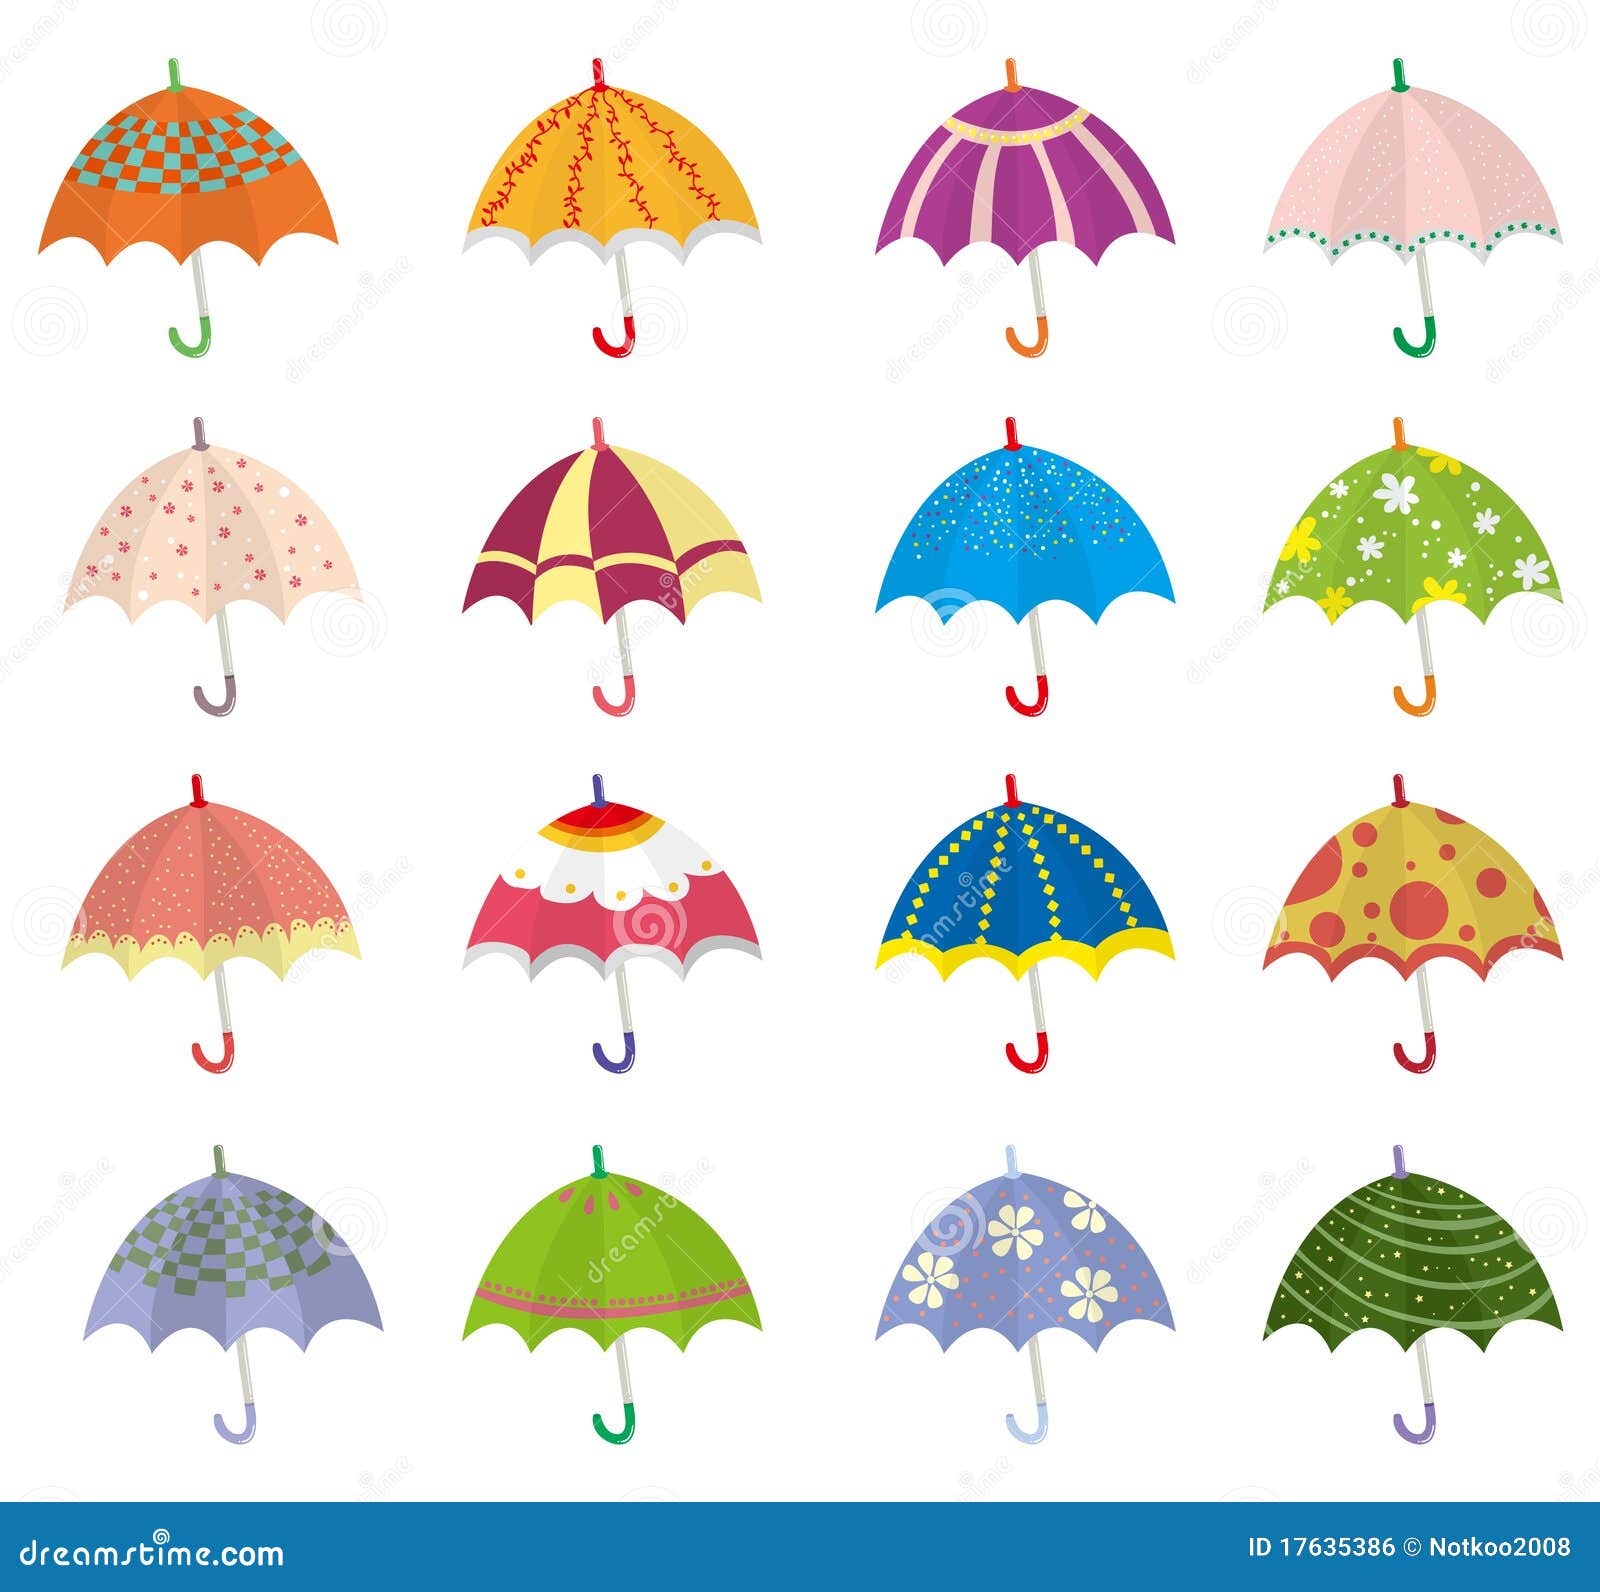 Guarda-chuva ícones gratuitos criados por Freepik  Bonitos desenhos  fáceis, Desenhos doodles simples, Coisas simples para desenhar